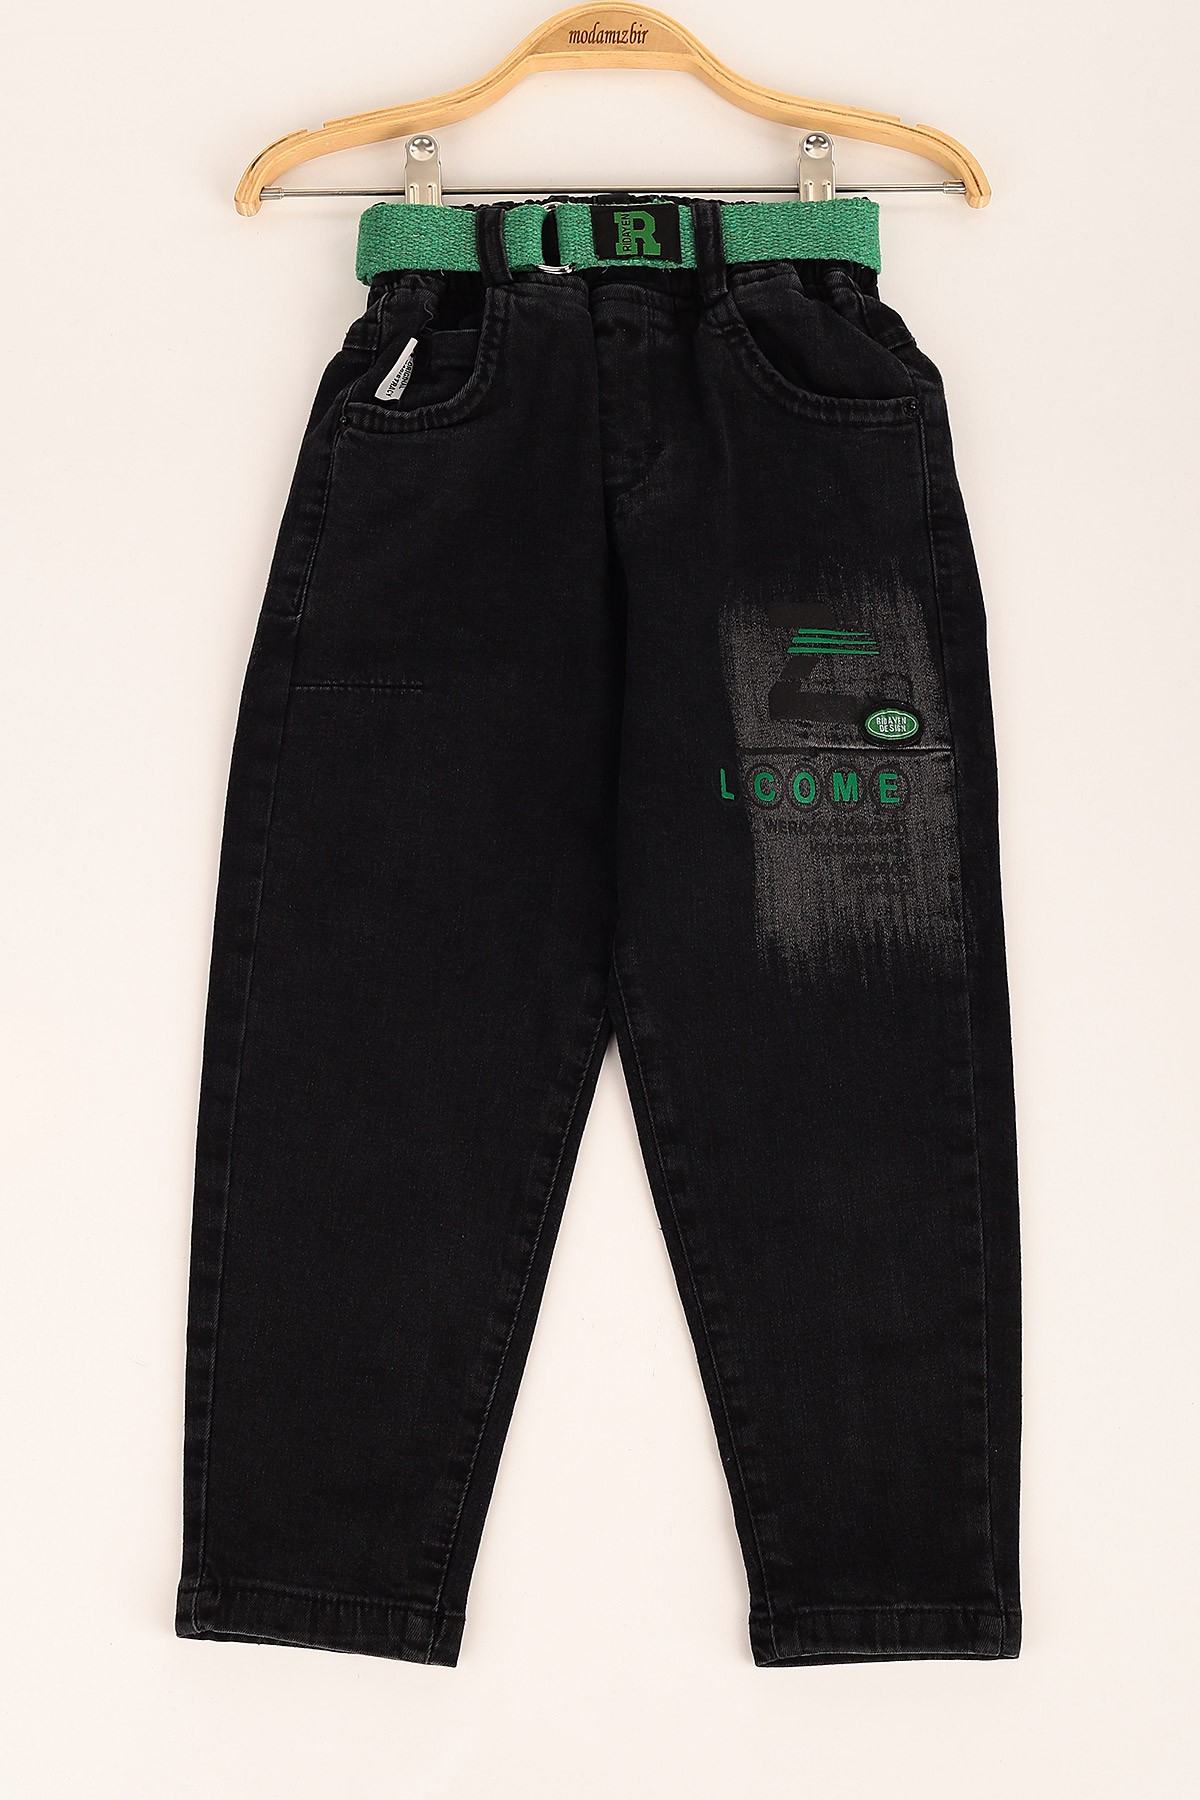 Siyah Yeşil (5-8 Yaş) Lcome Baskılı Erkek Çocuk Pantolon 145868